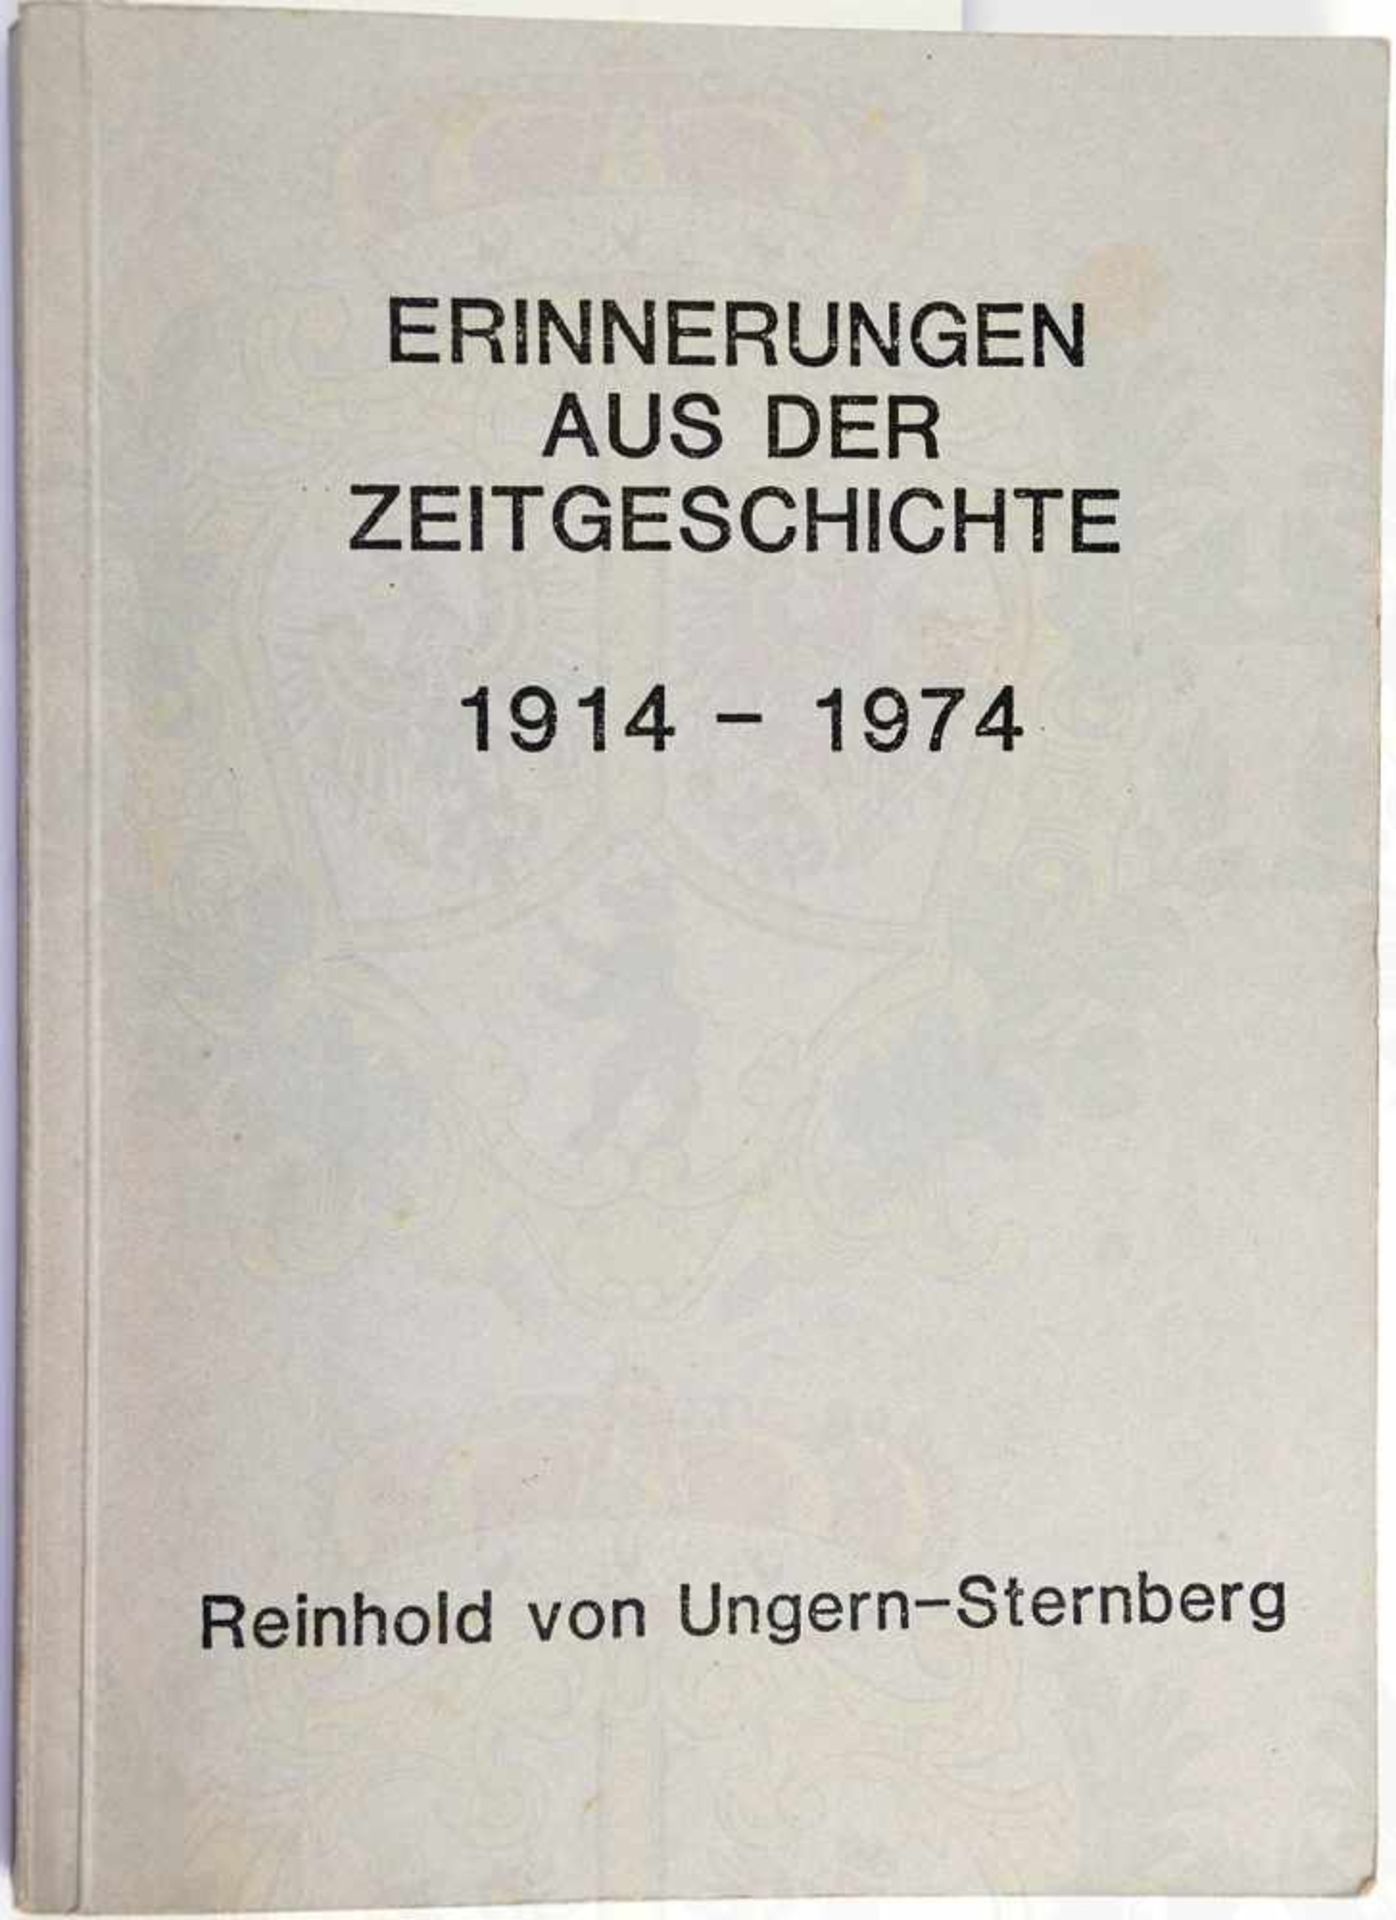 ERINNERUNGEN AUS DER ZEITGESCHICHTE 1914-1974, Autobiographie, Reinhold v. Ungern-Sternberg, Pullach